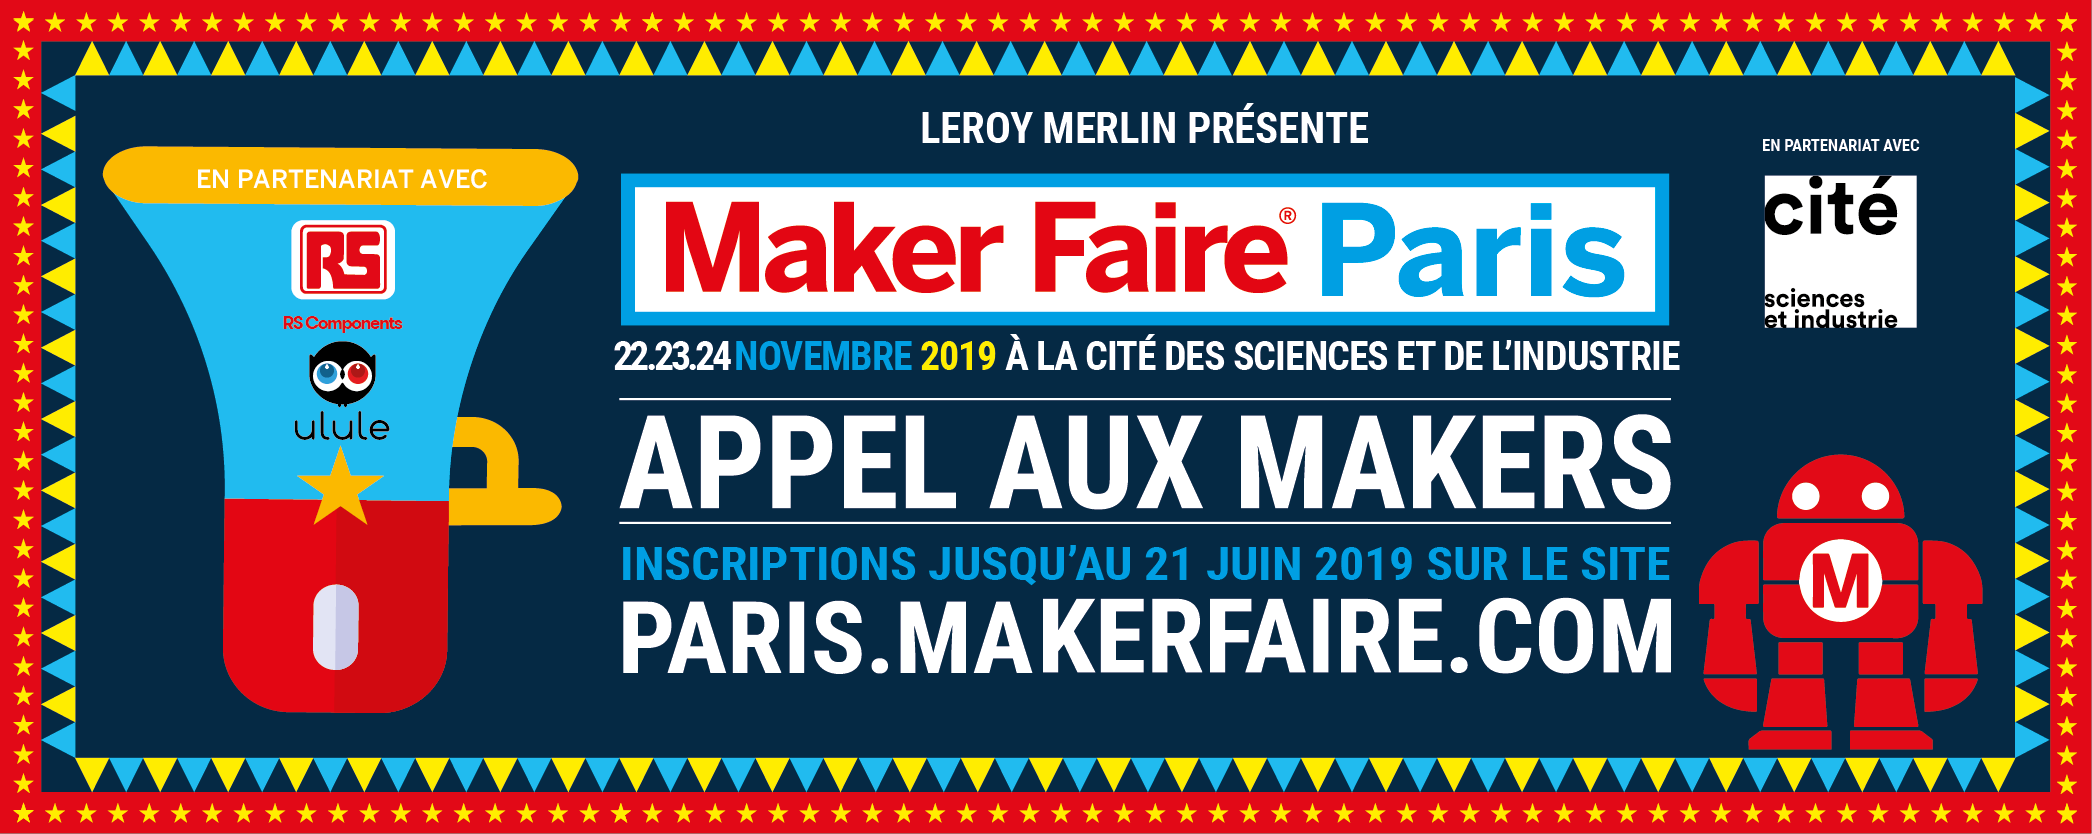 Appel Aux Makers Maker Faire Paris 2019